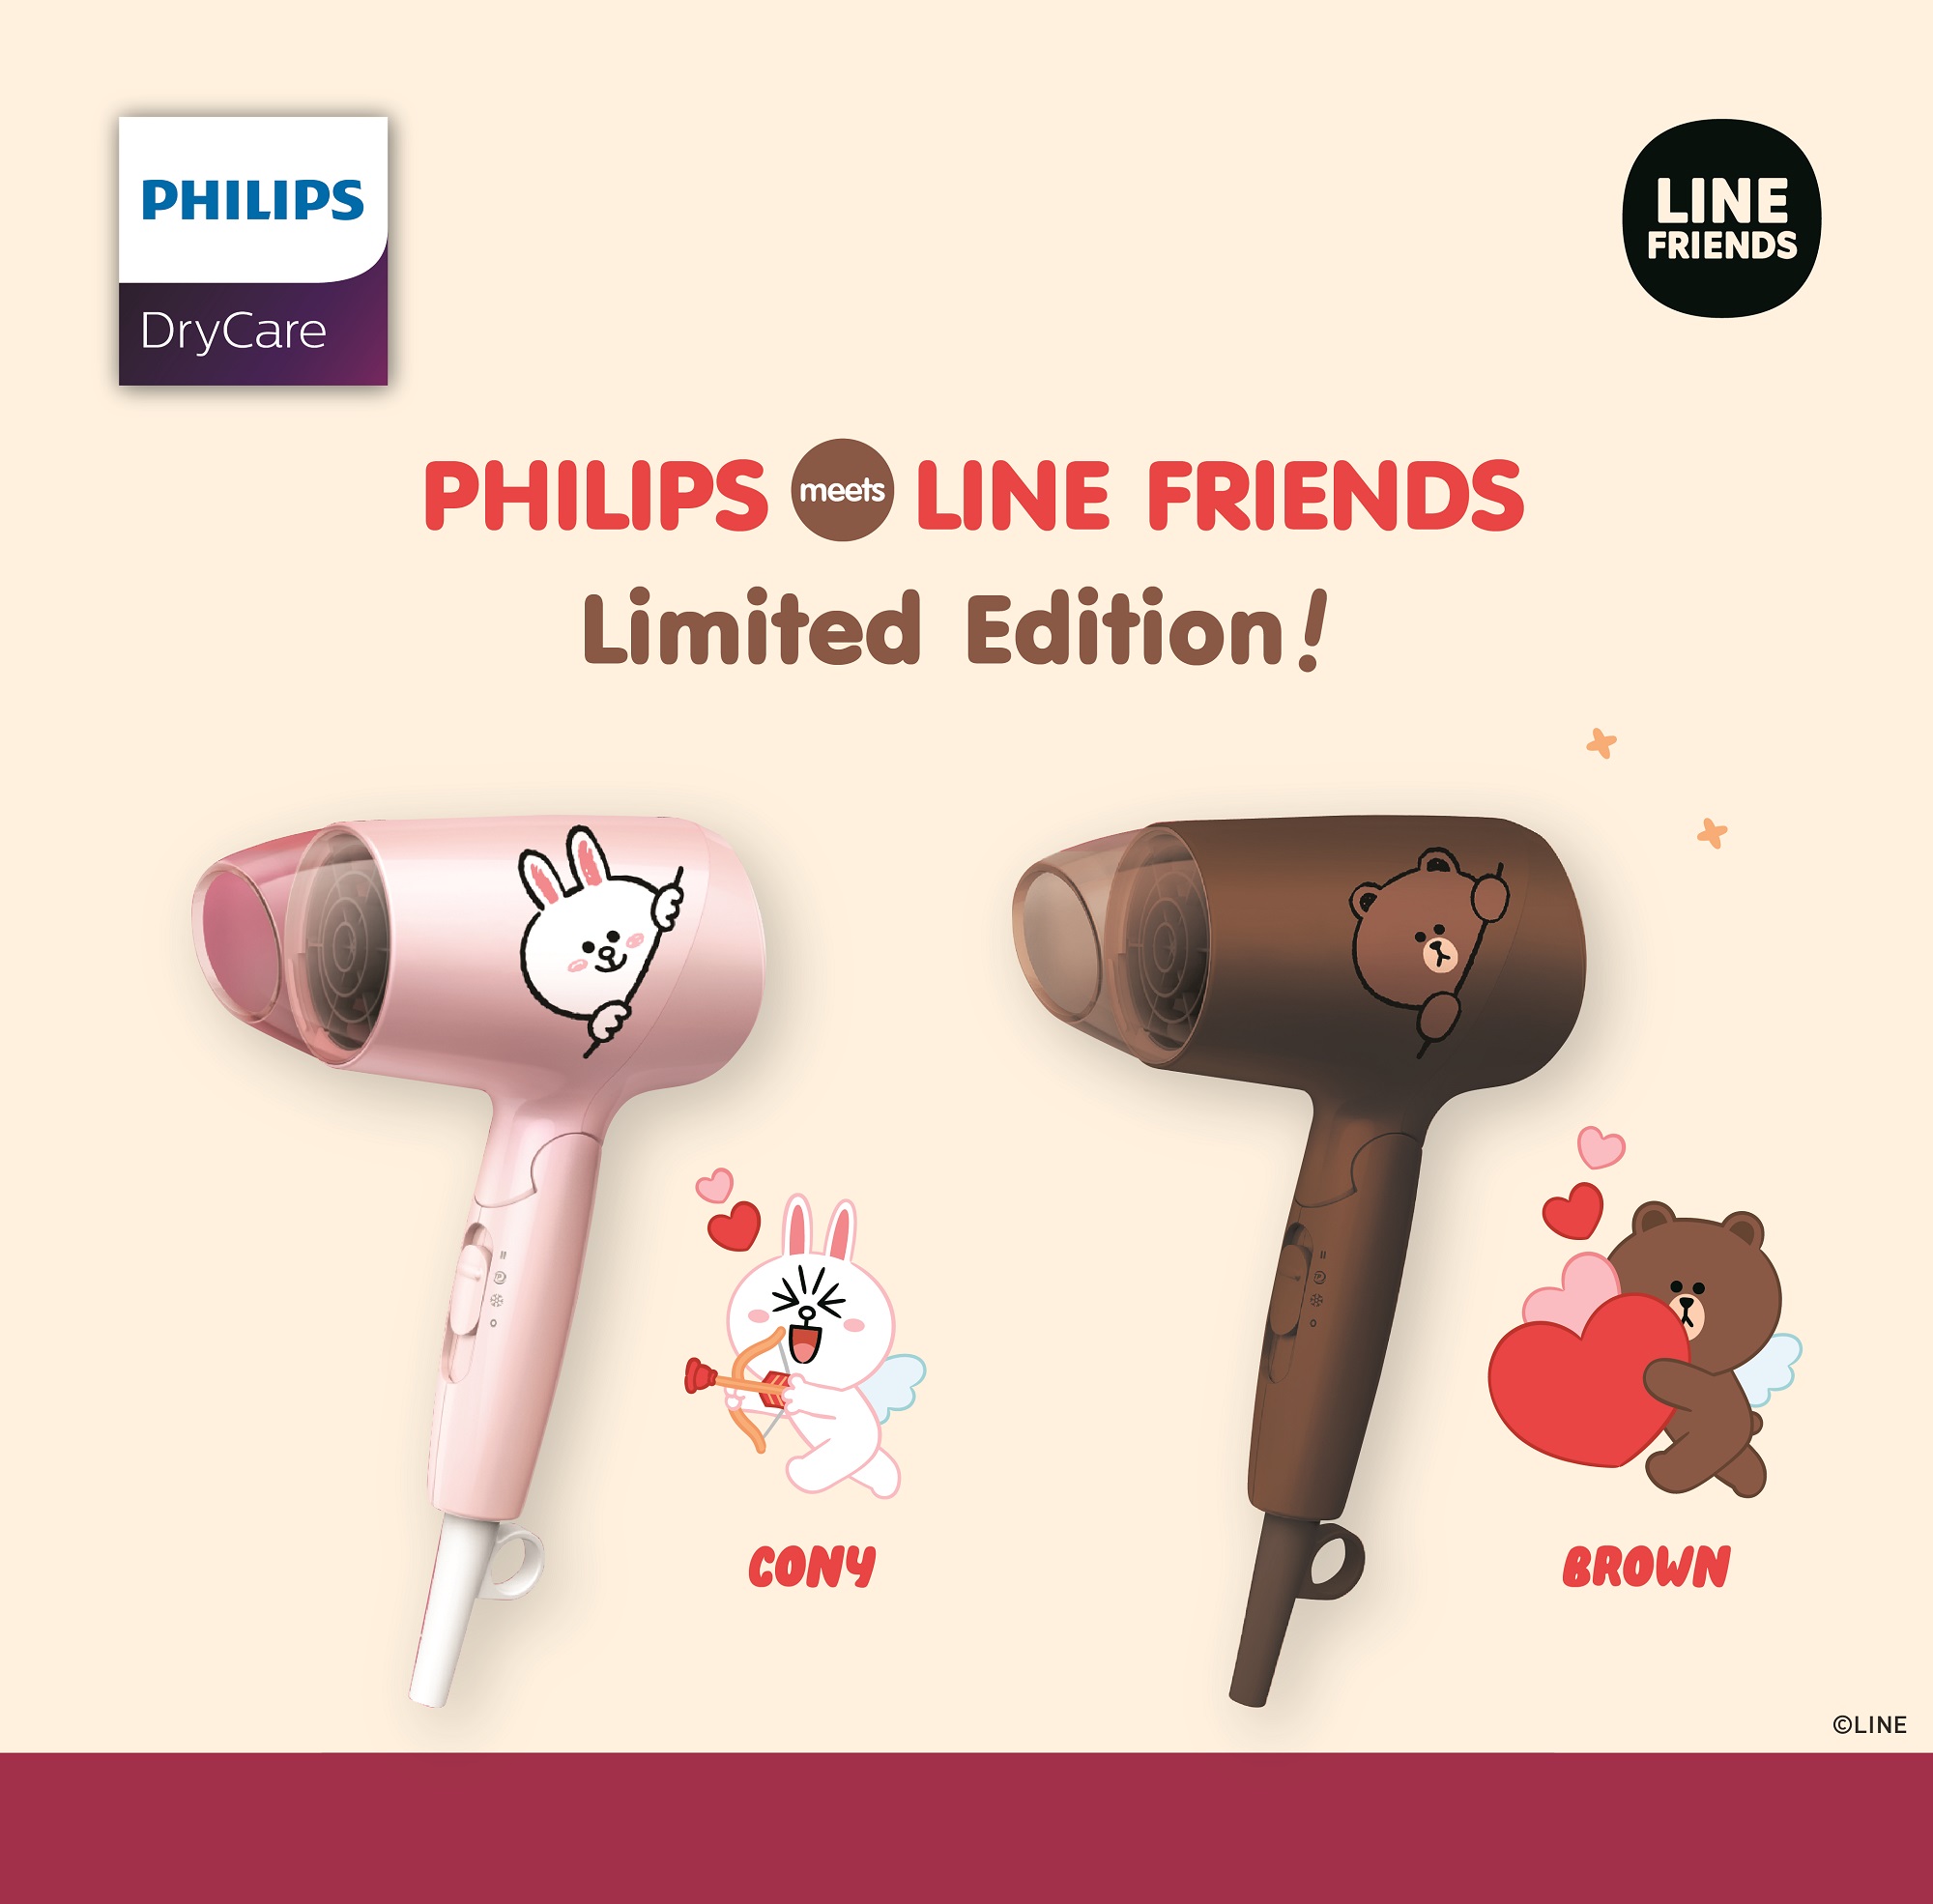 ฟิลิปส์ จับมือ ไลน์ เฟรนด์ เปิดตัวไดร์เป่าผมสุดคิวท์ Philips Meets LINE FRIENDS Limited Edition ไอเท็มเด็ดที่สาวกไลน์ เฟรนด์ ต้องไม่พลาด